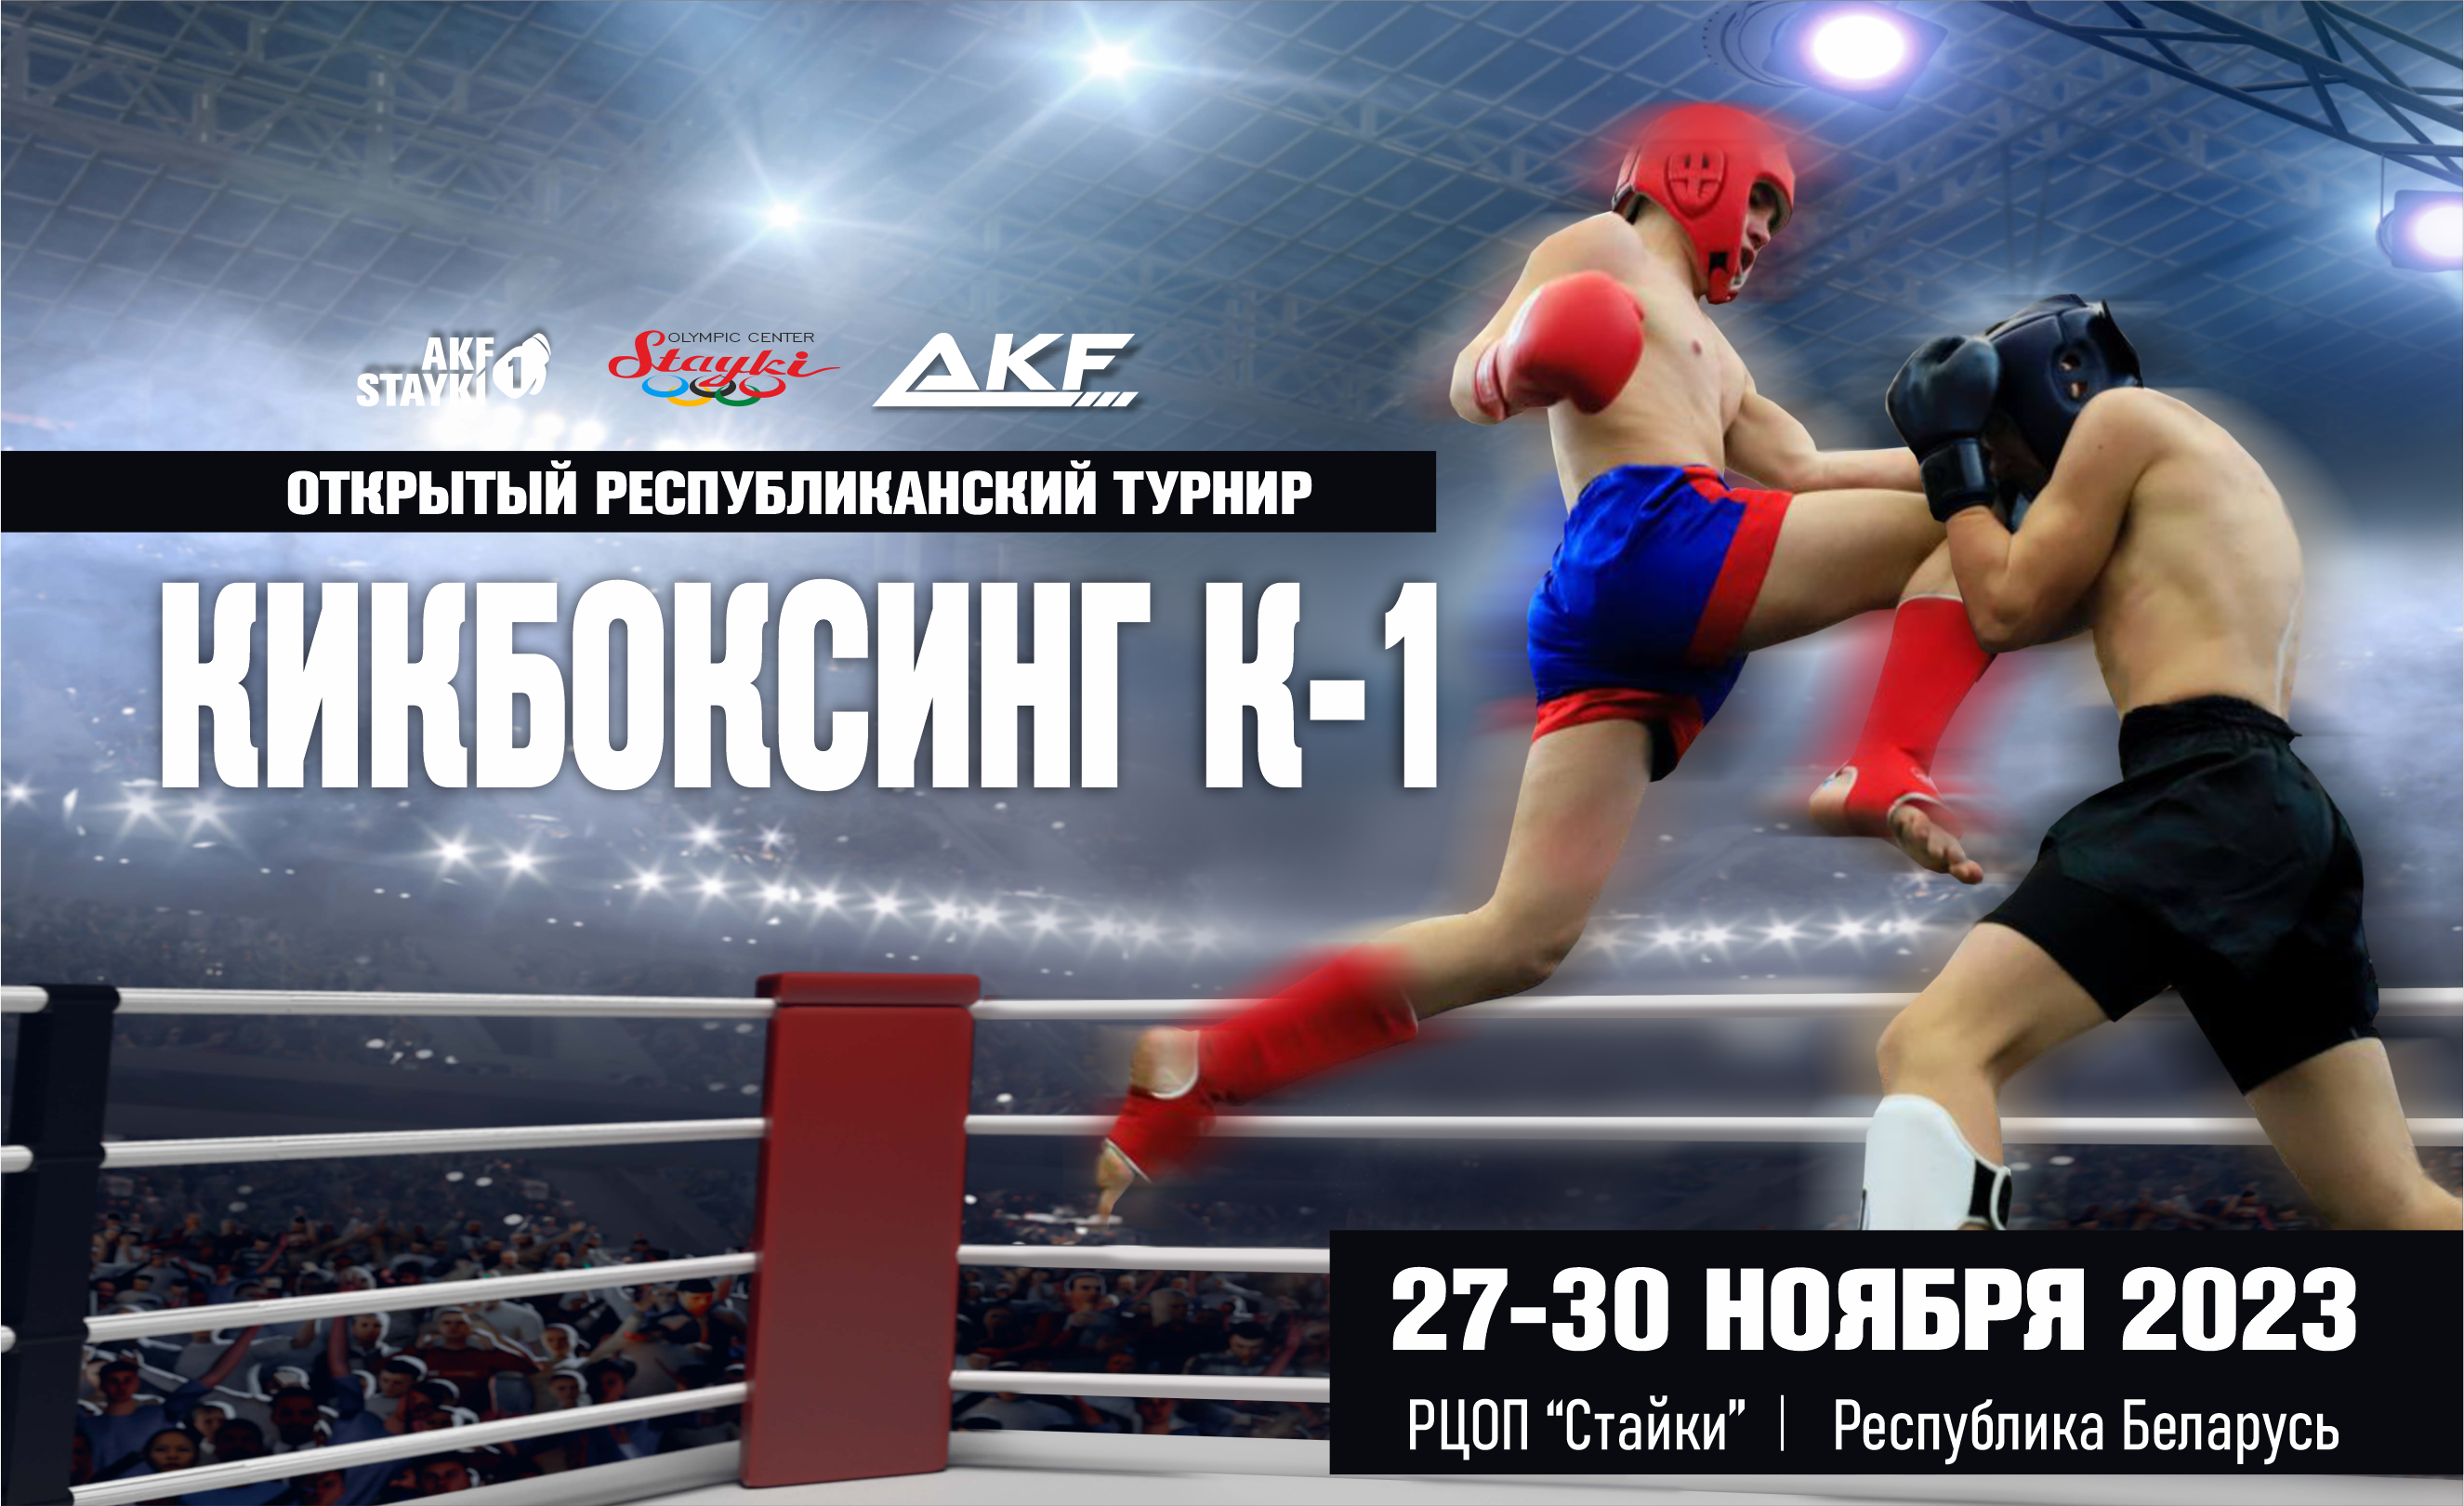 AKF STAYKI 1 - открытый республиканский турнир по кикбоксингу К1